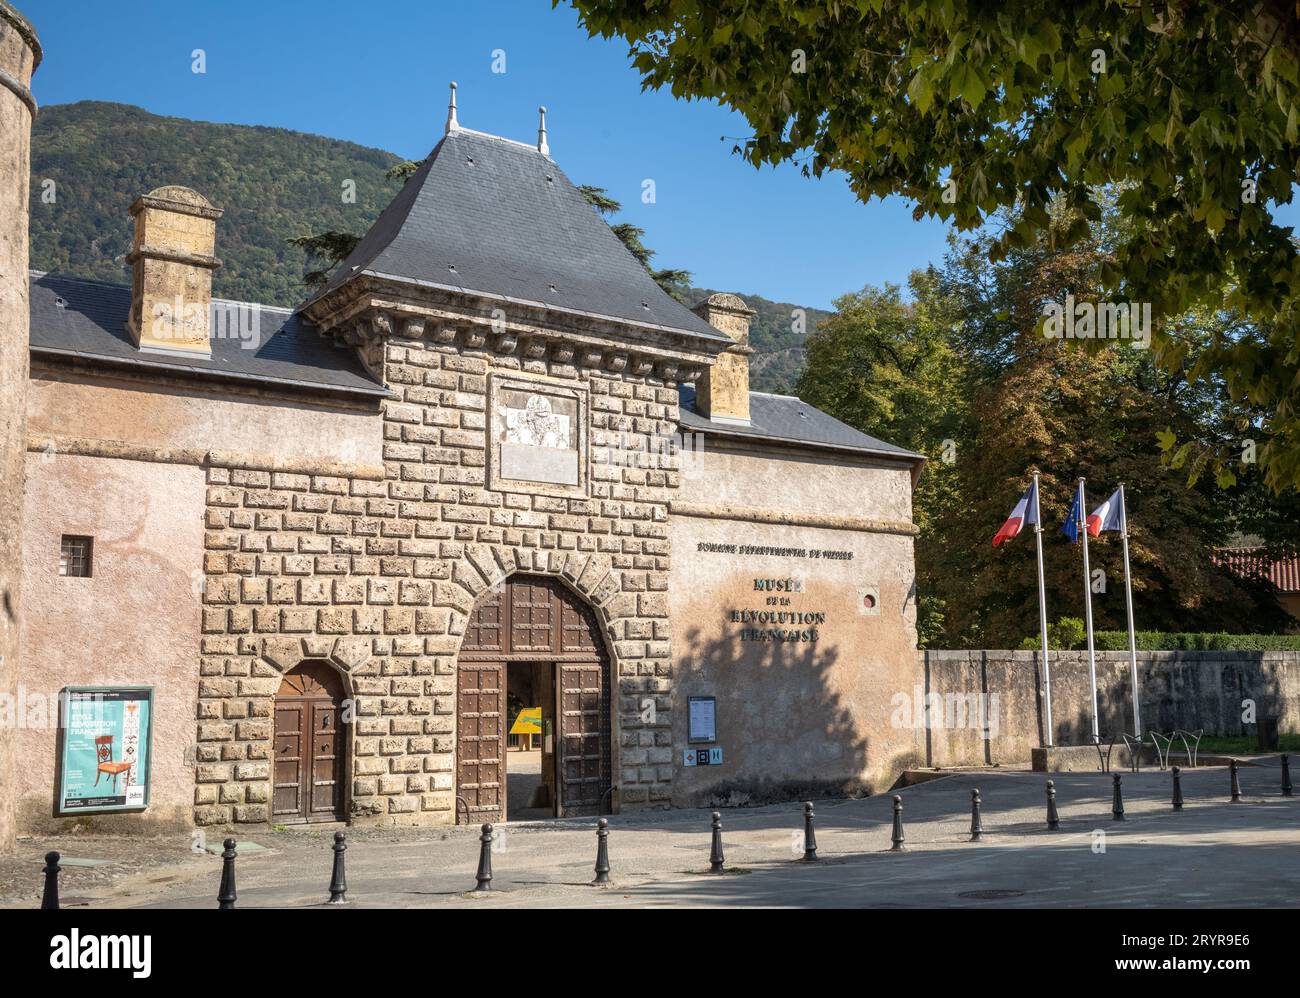 Französische und EU-Flaggen fliegen neben dem Haupteingang des Schlosses, in dem sich das Museum der Französischen Revolution, Vizille, Frankreich befindet. Stockfoto